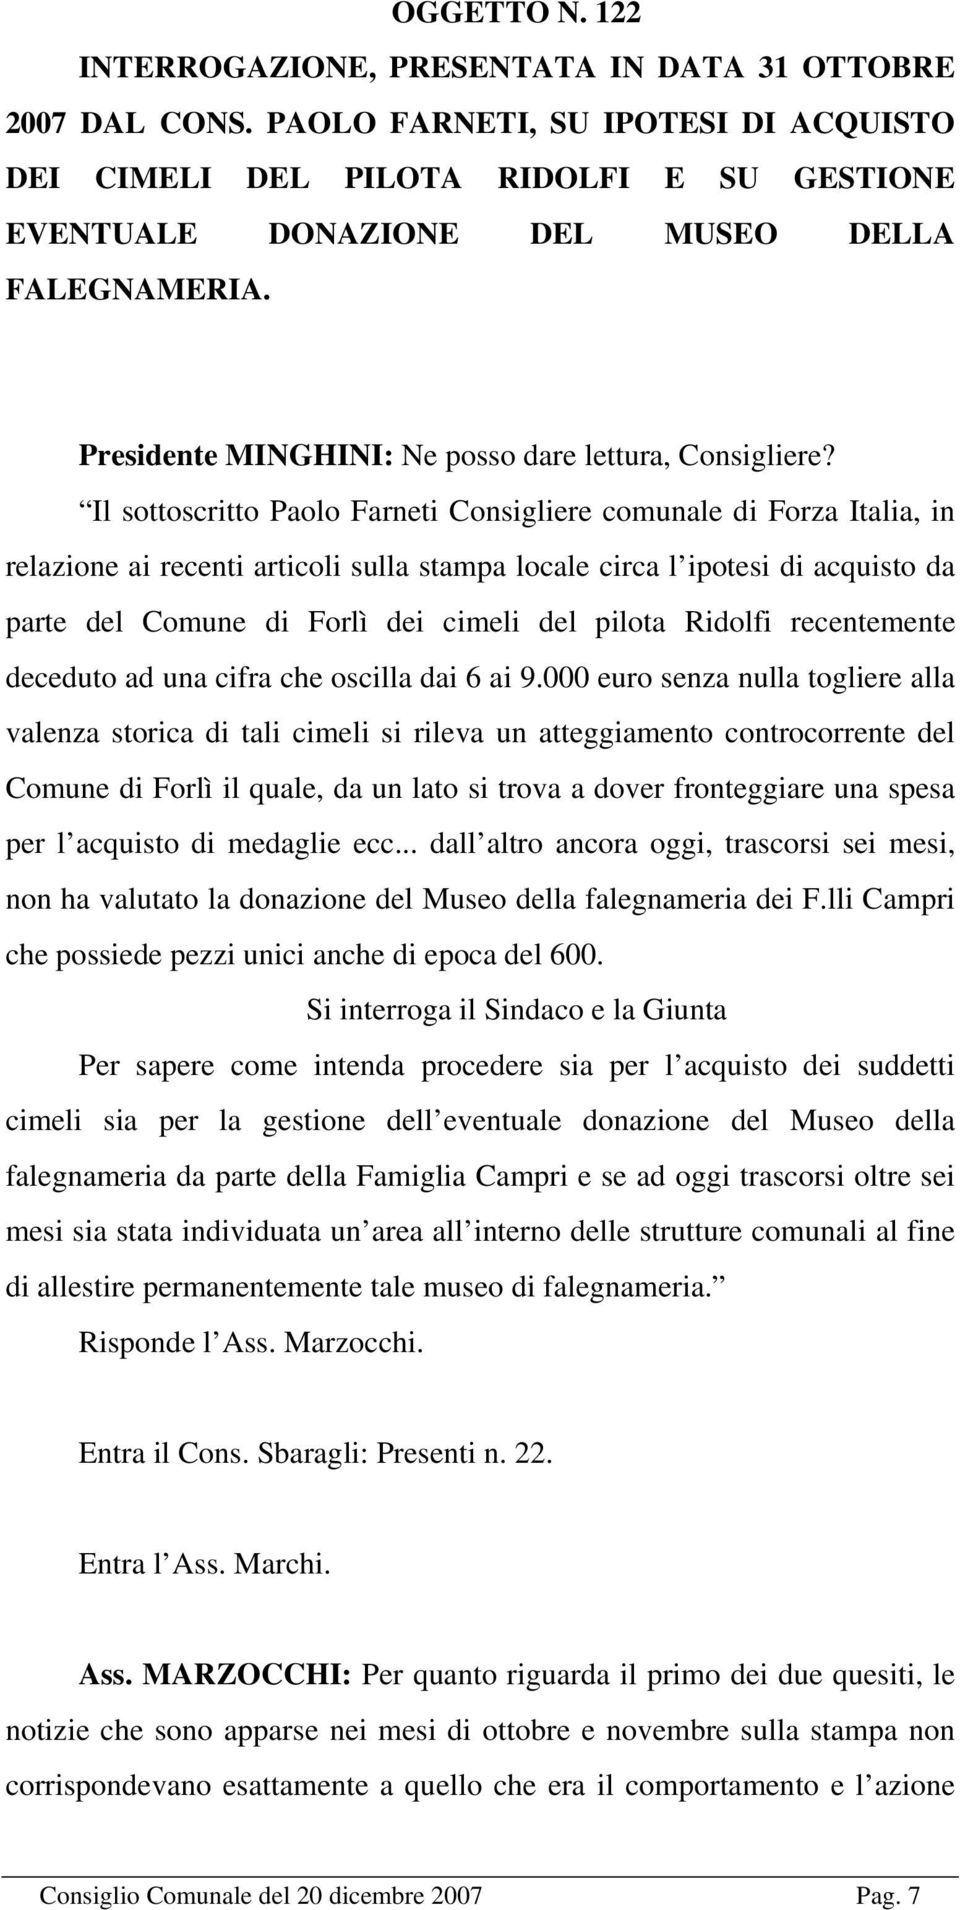 Il sottoscritto Paolo Farneti Consigliere comunale di Forza Italia, in relazione ai recenti articoli sulla stampa locale circa l ipotesi di acquisto da parte del Comune di Forlì dei cimeli del pilota